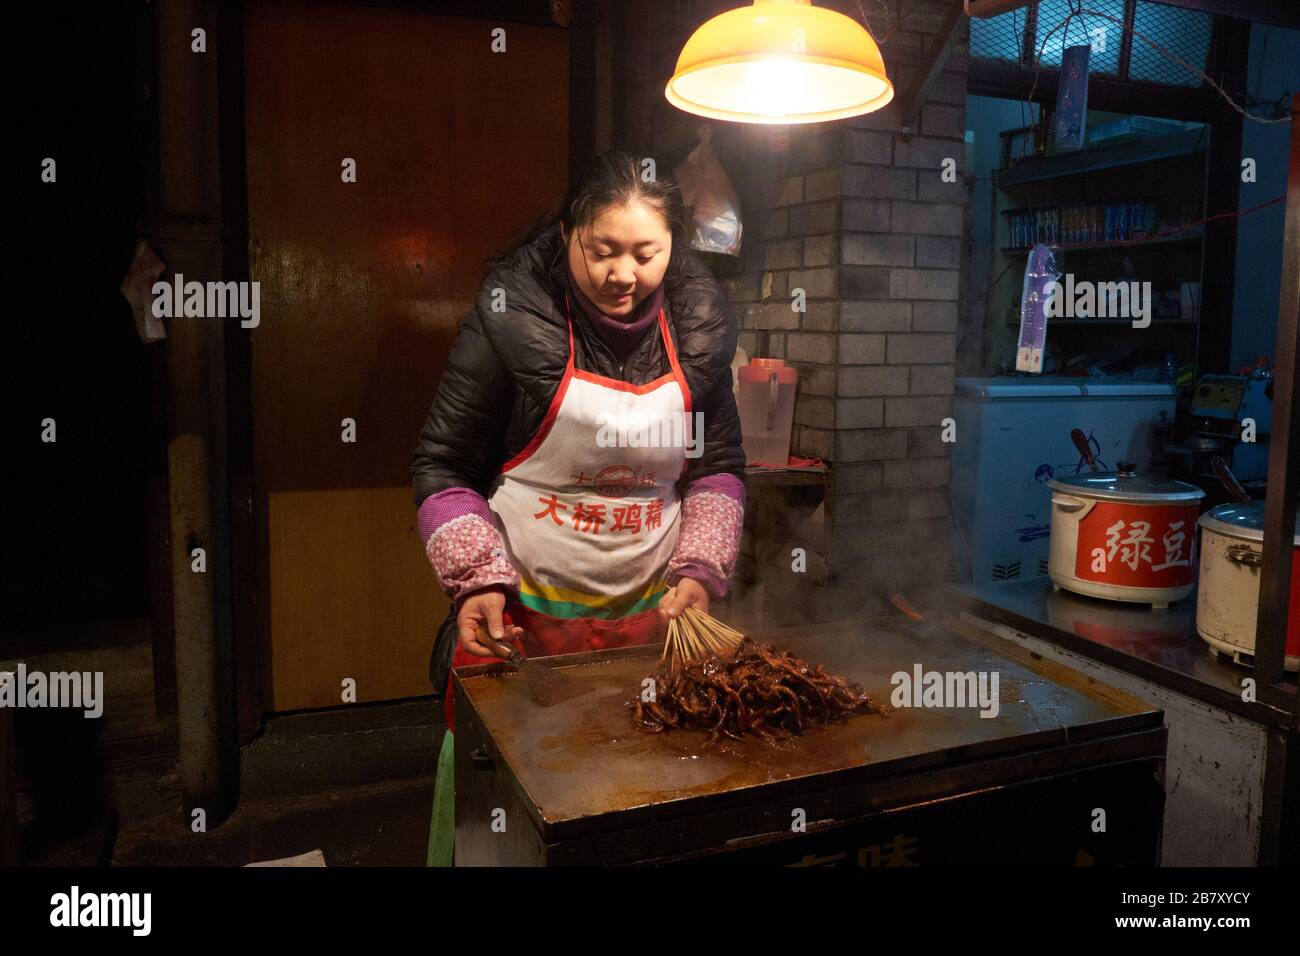 Wuhan, China en la provincia de Hubei, disparó en 2013, mostrando a los estilostas preparando y sirviendo alimentos cocinados. Foto de stock